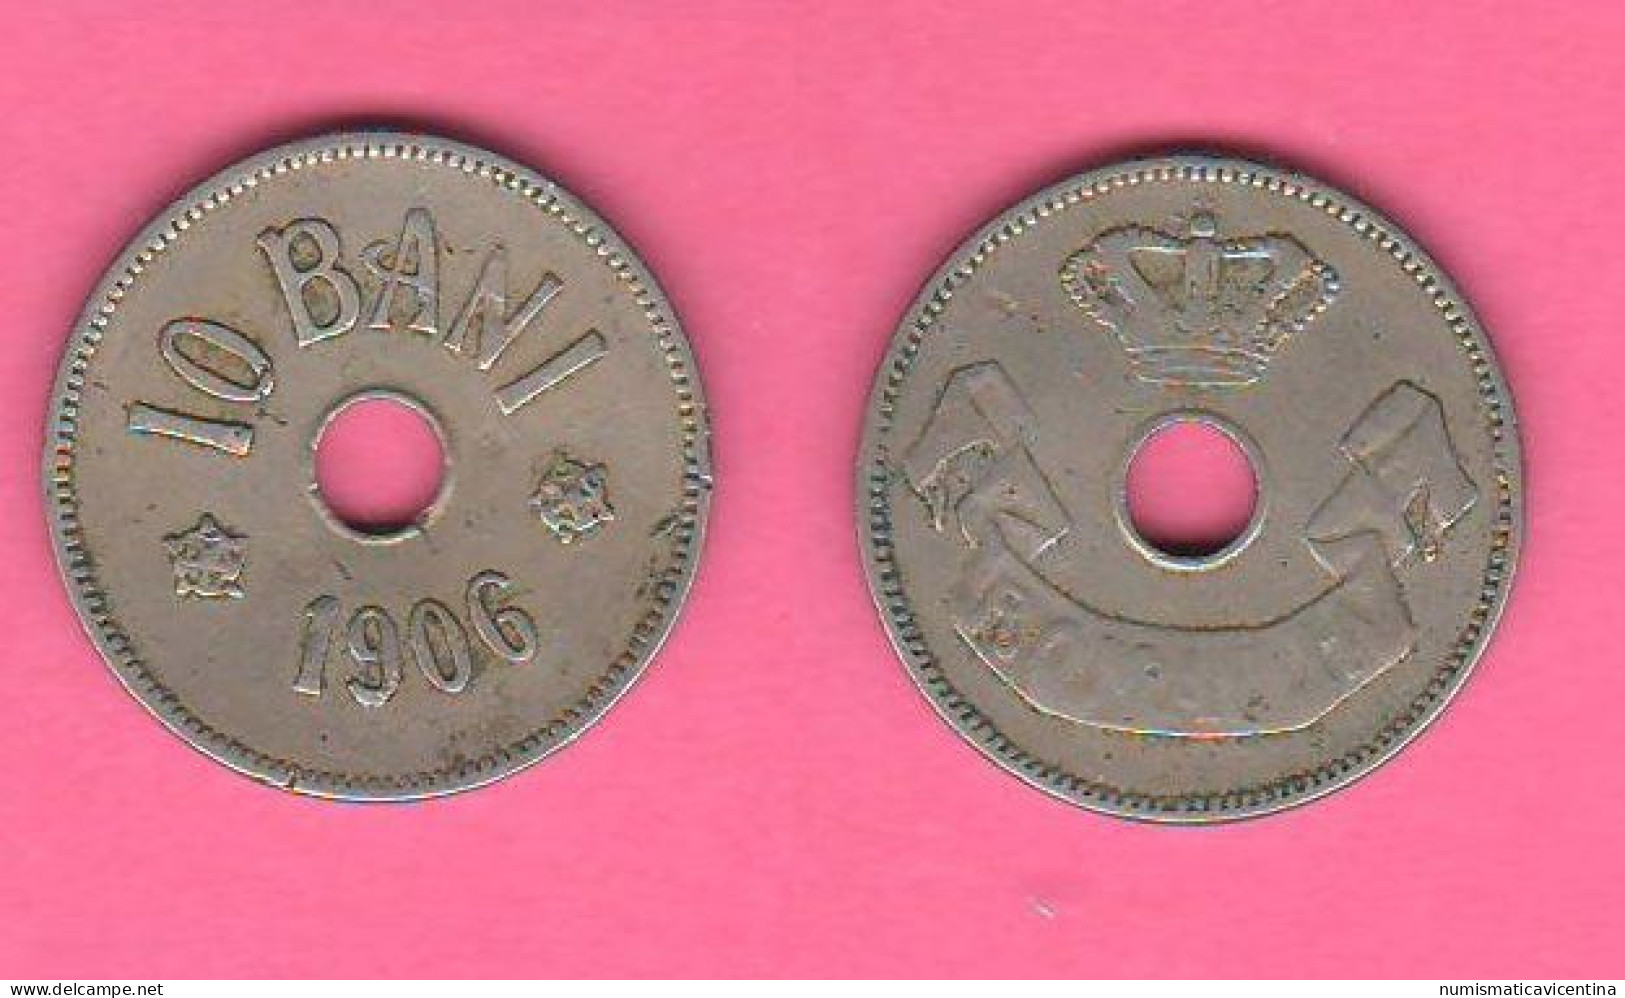 Romania 10 Bani 1906 Romanie Nickel Coin - Romania